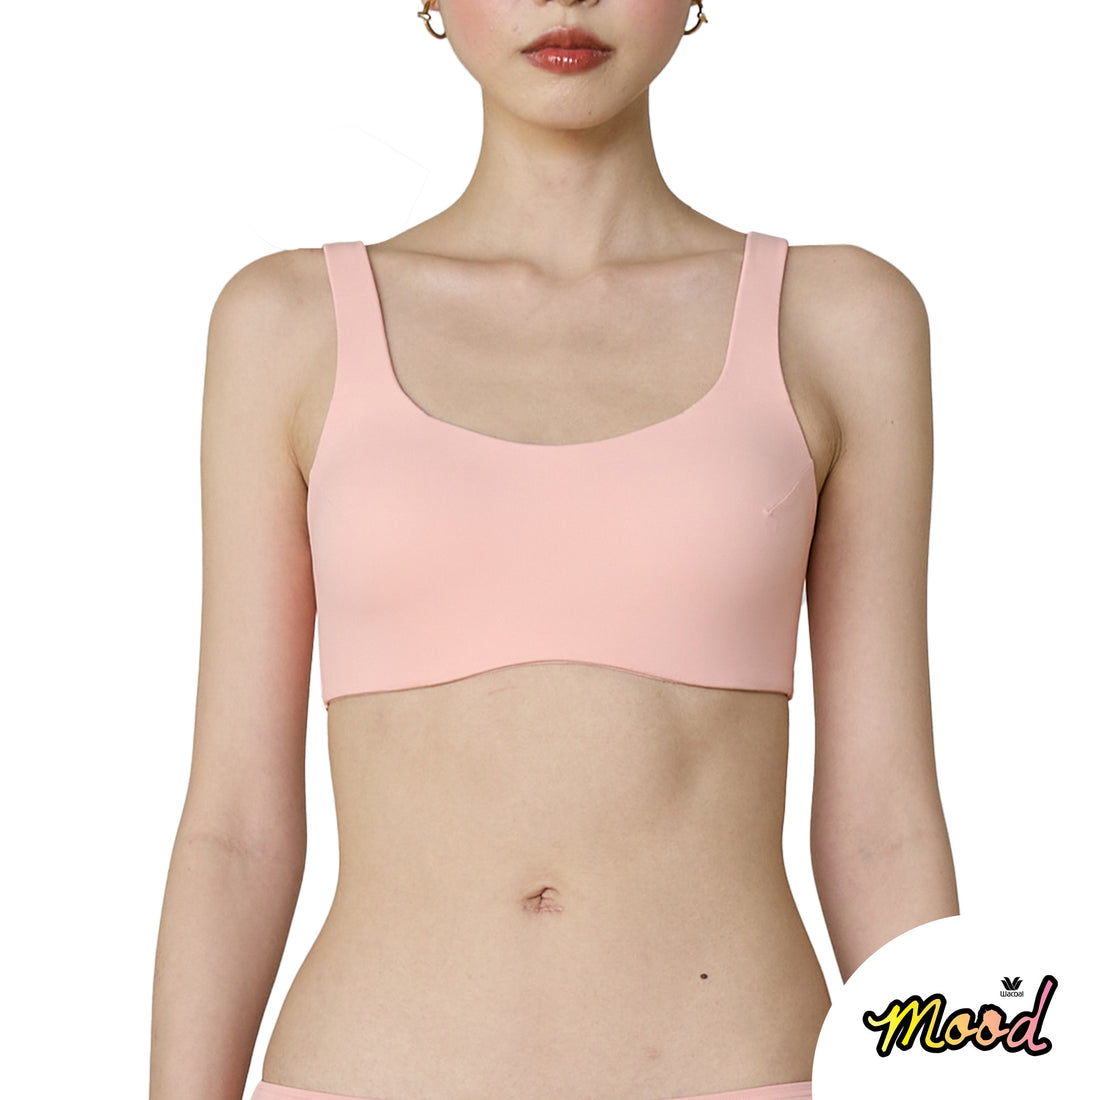 Wacoal Mood Smart Size teenage underwear, wireless bra, model MM1F08, –  Thai Wacoal Public Company Limited